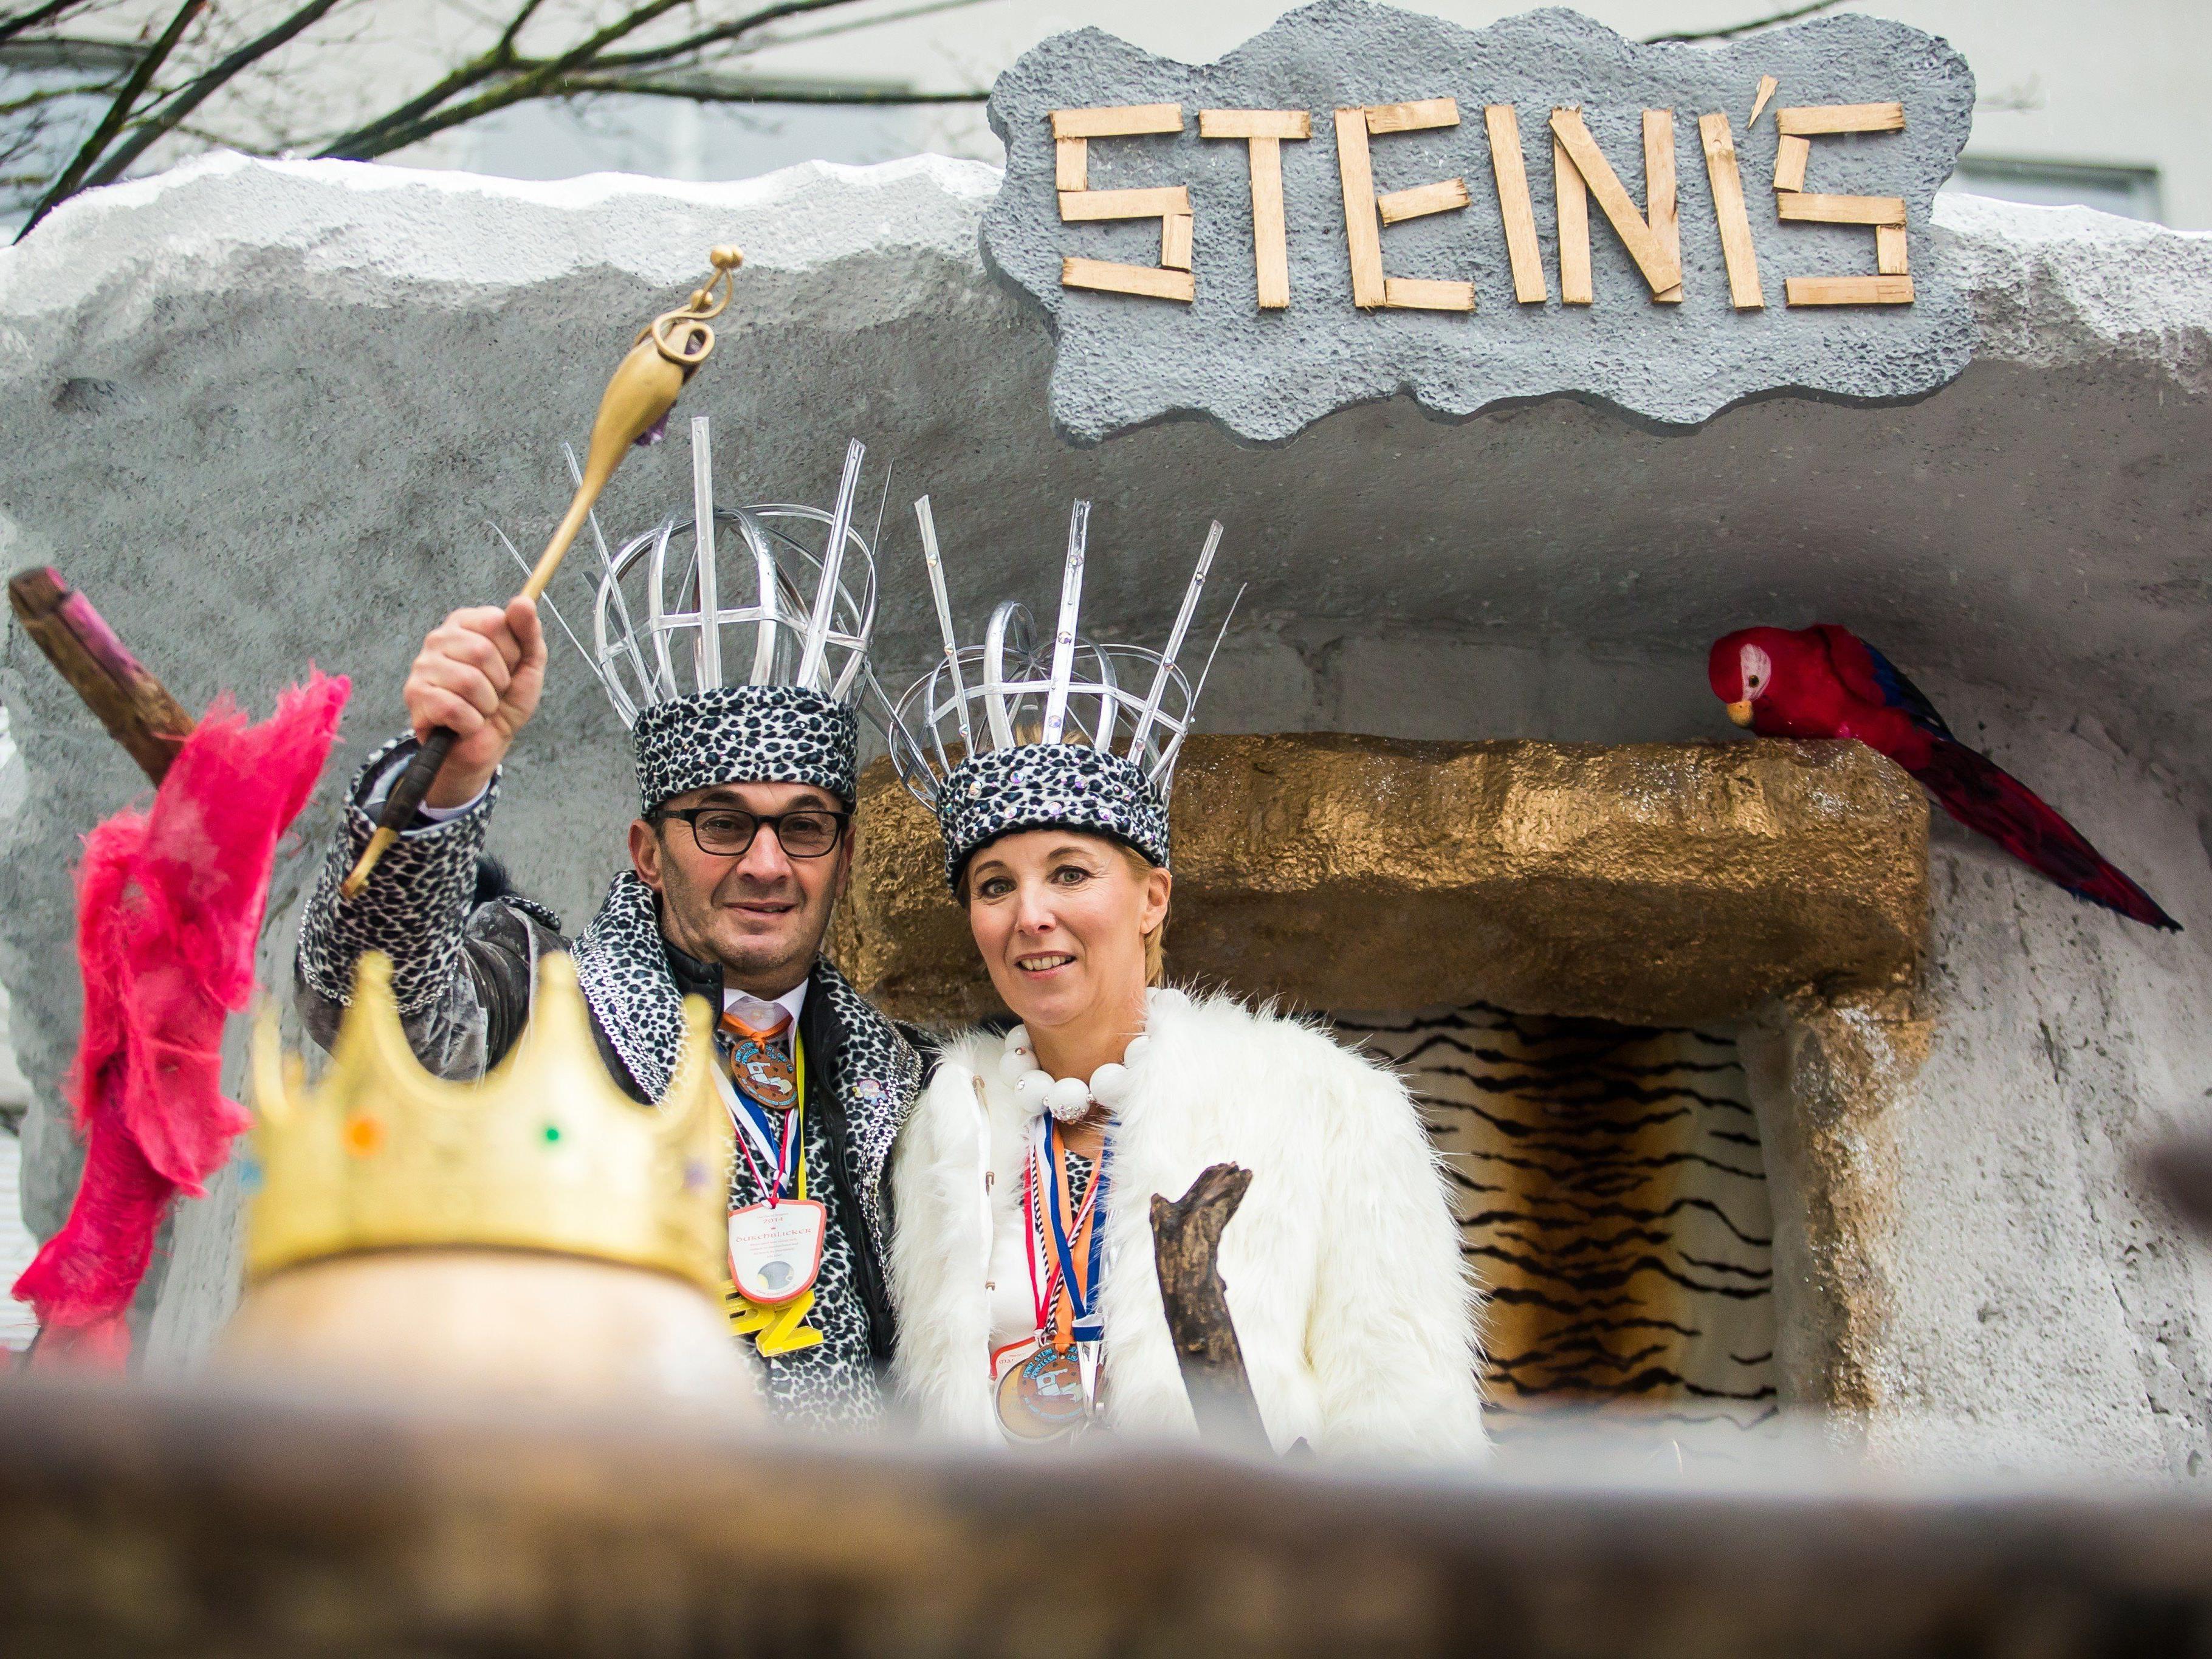 Prinz Steini I. und Prinzessin Lisi I. übernehmen am gumpiga Donnerstag die Landeshauptstadt Bregenz.